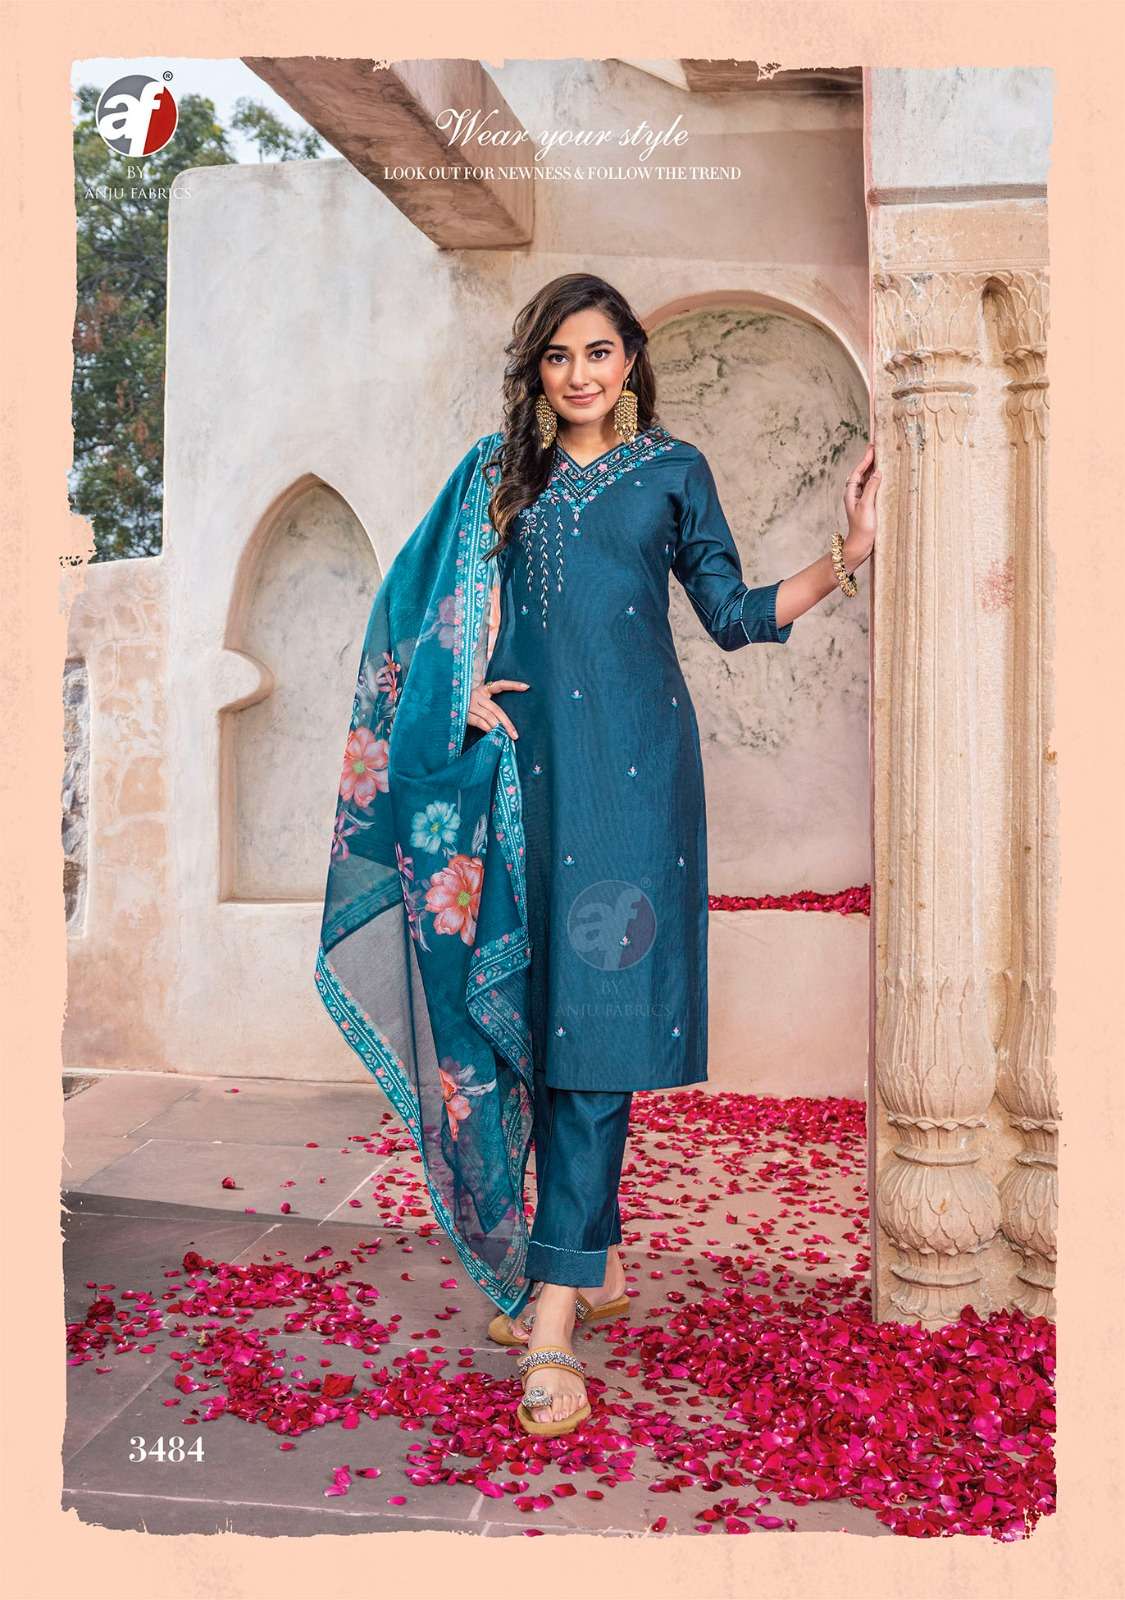 Anju Fabrics Gazal vol -4 Kurti Wholesale catalog